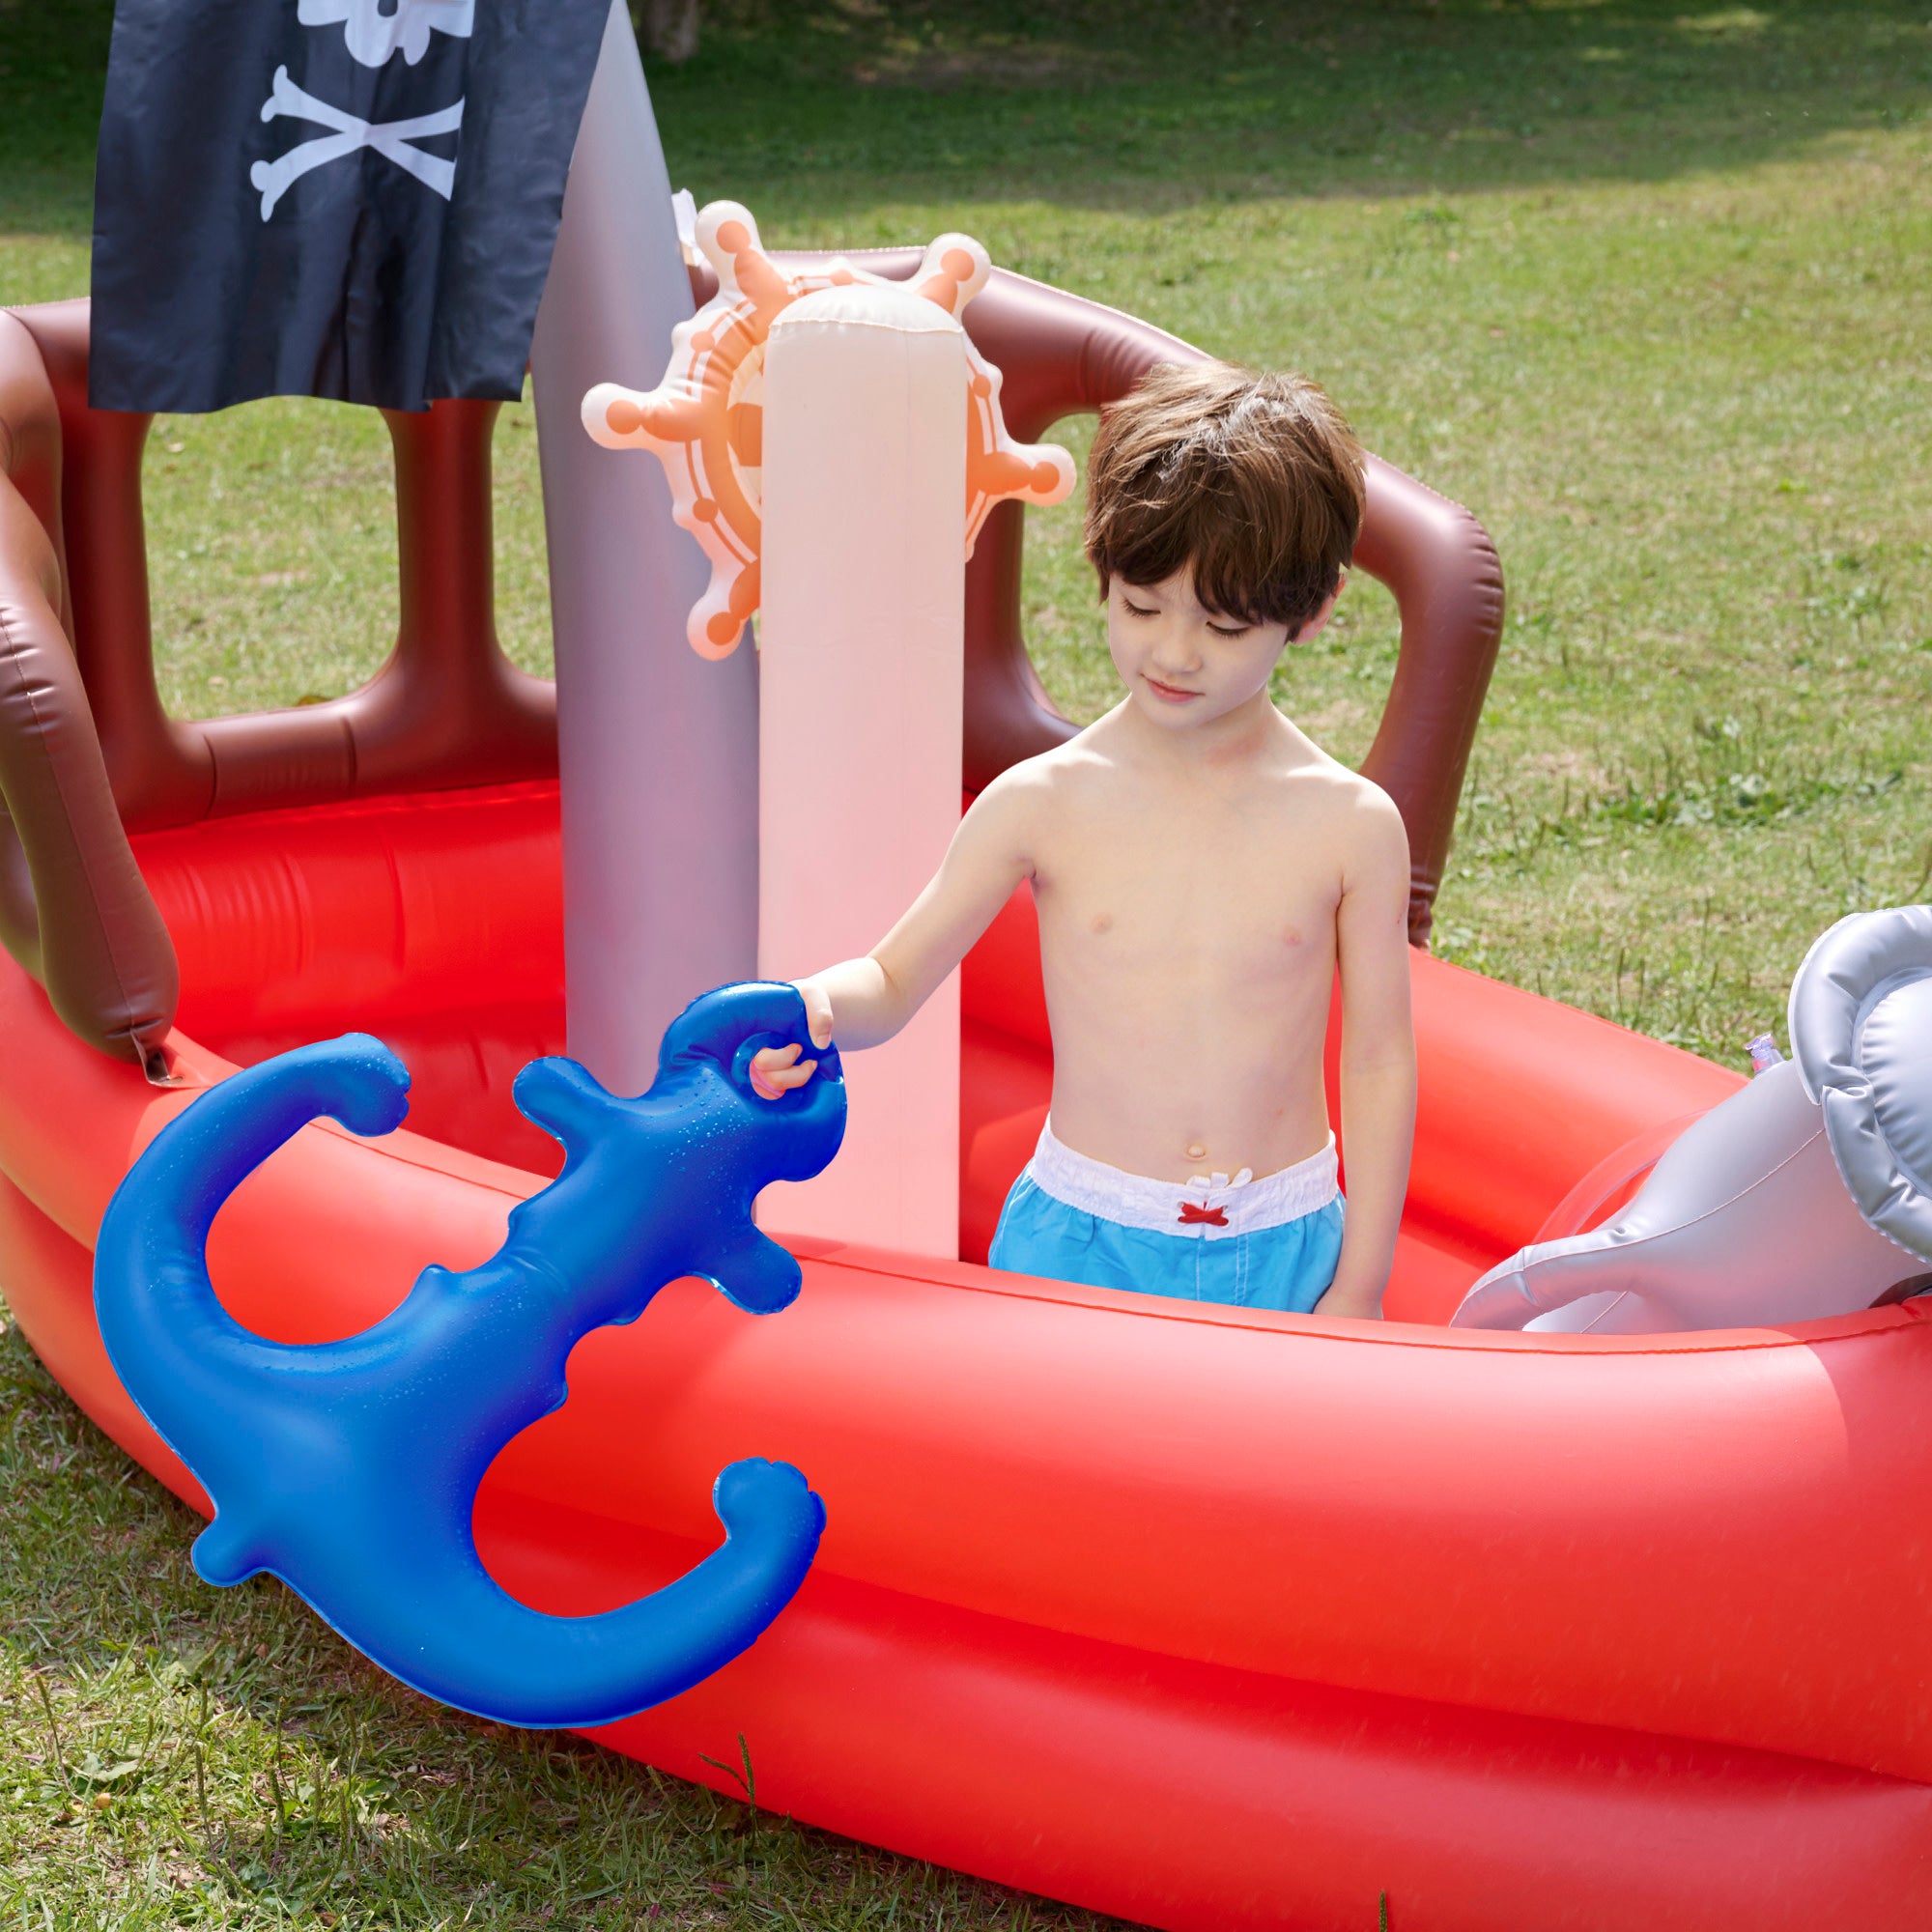 Teamson Kids - Water Fun Pirate boat Inflatable Sprinkler Play